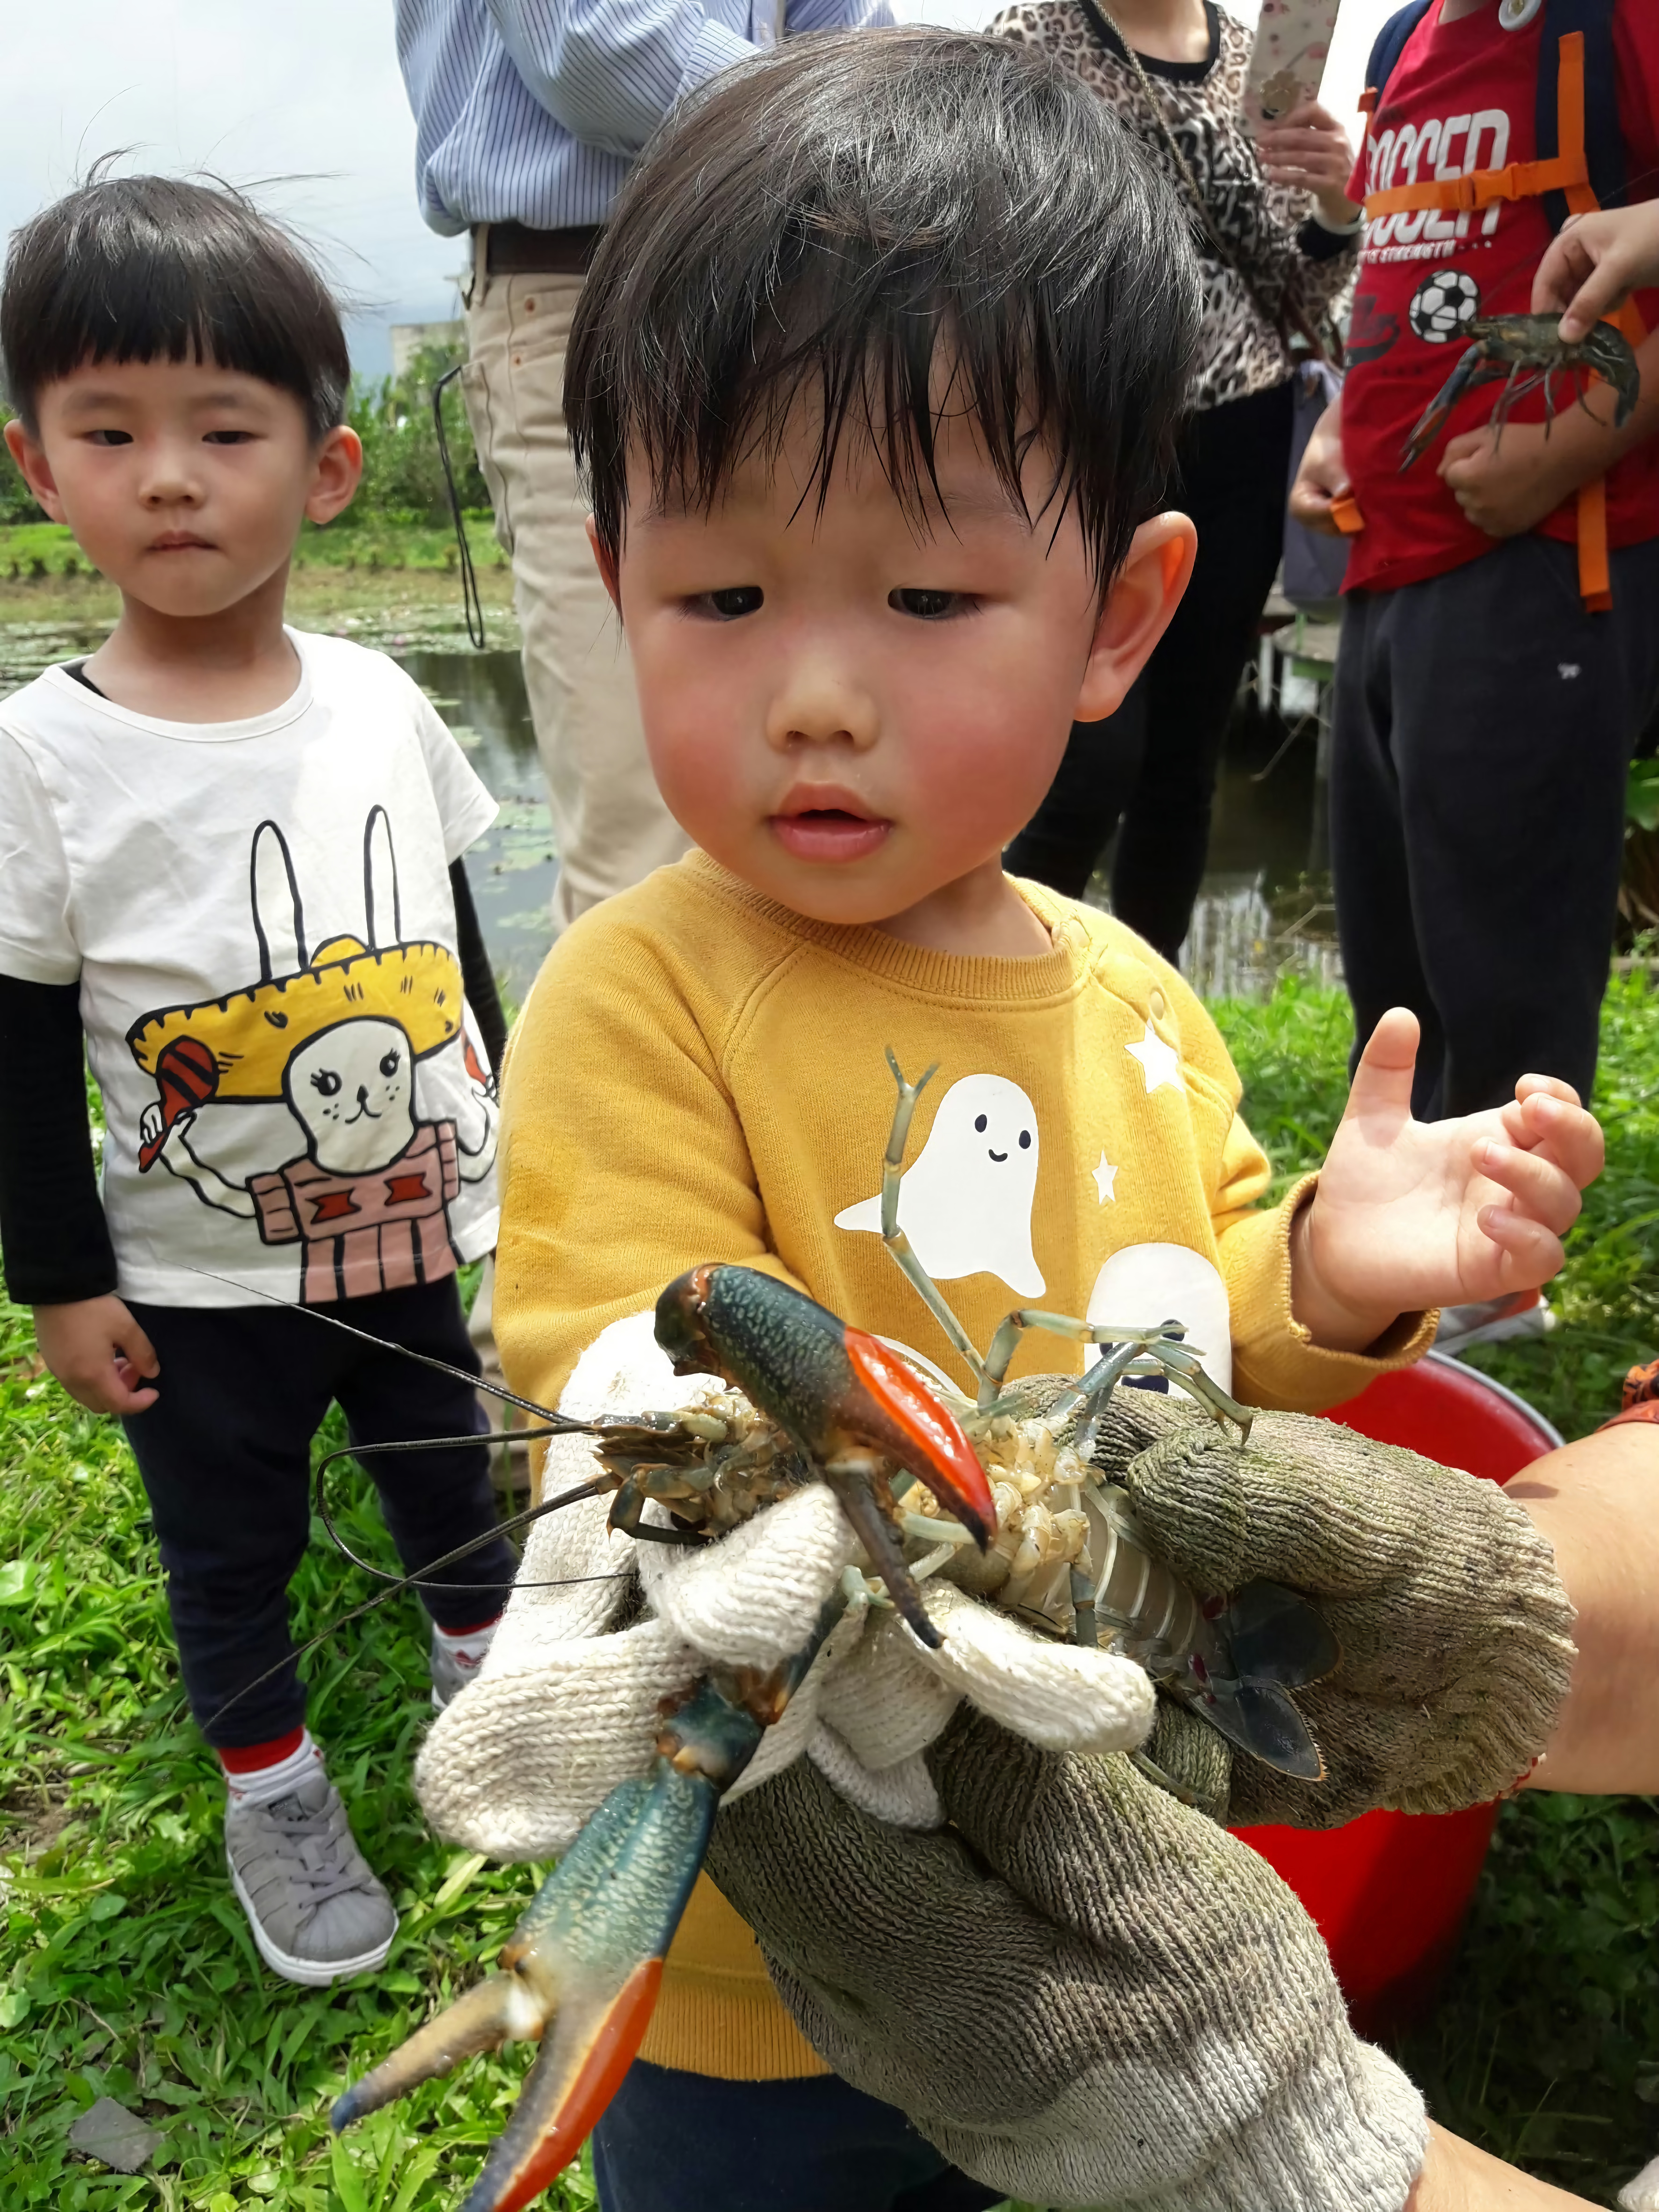 小朋友也能體驗抓龍蝦的樂趣。